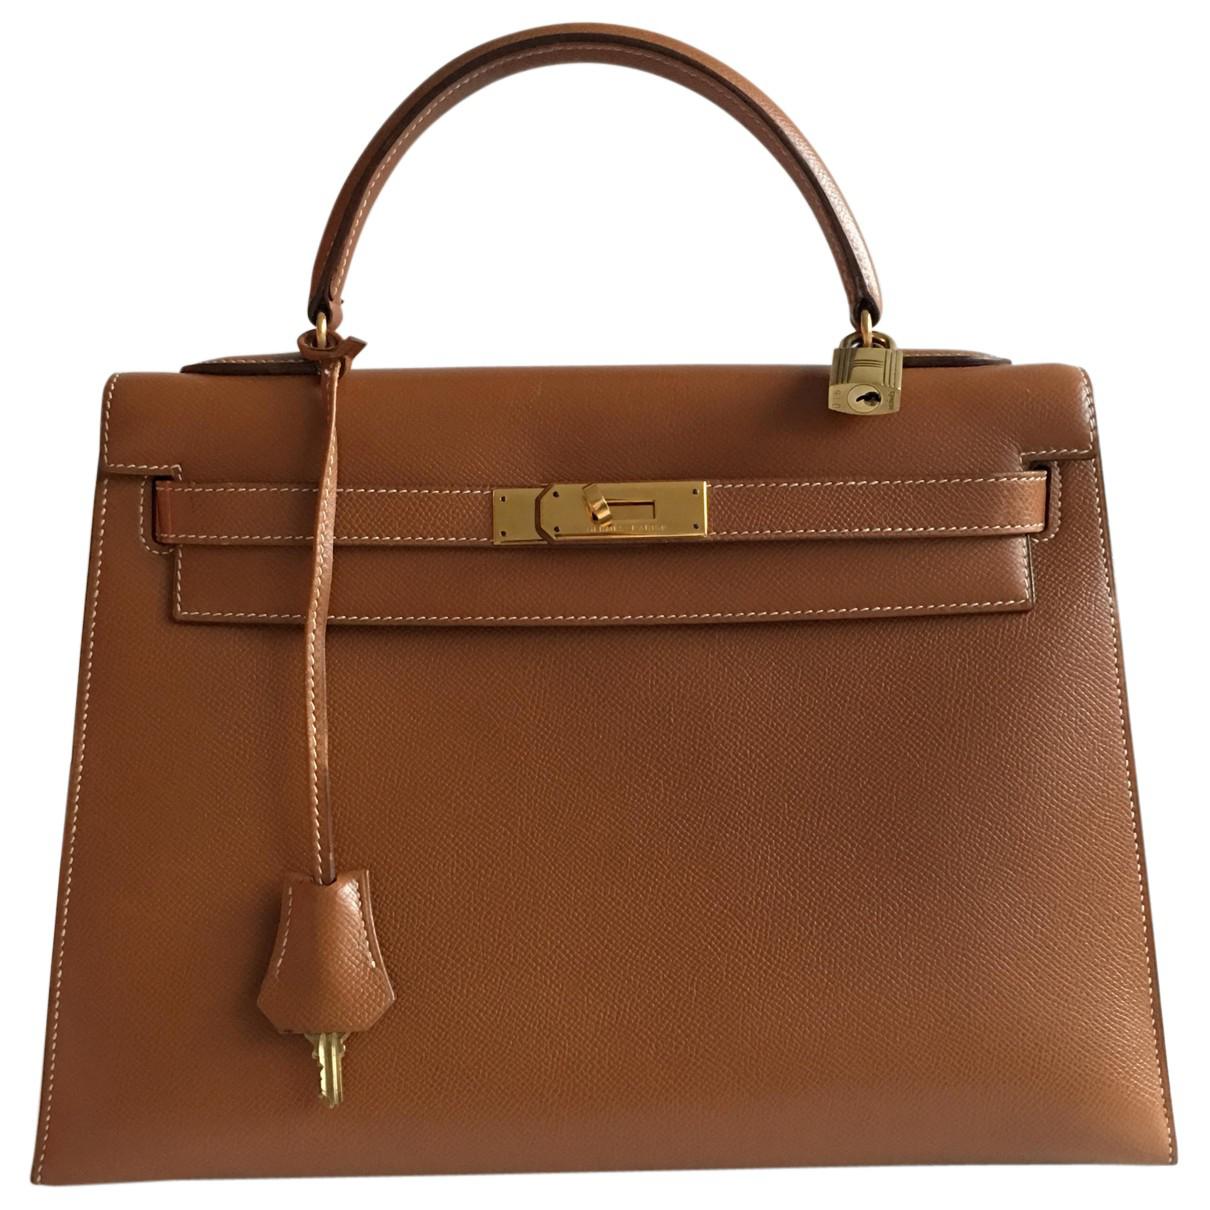 Lyst - Hermès Pre-owned Kelly Handbag in Brown